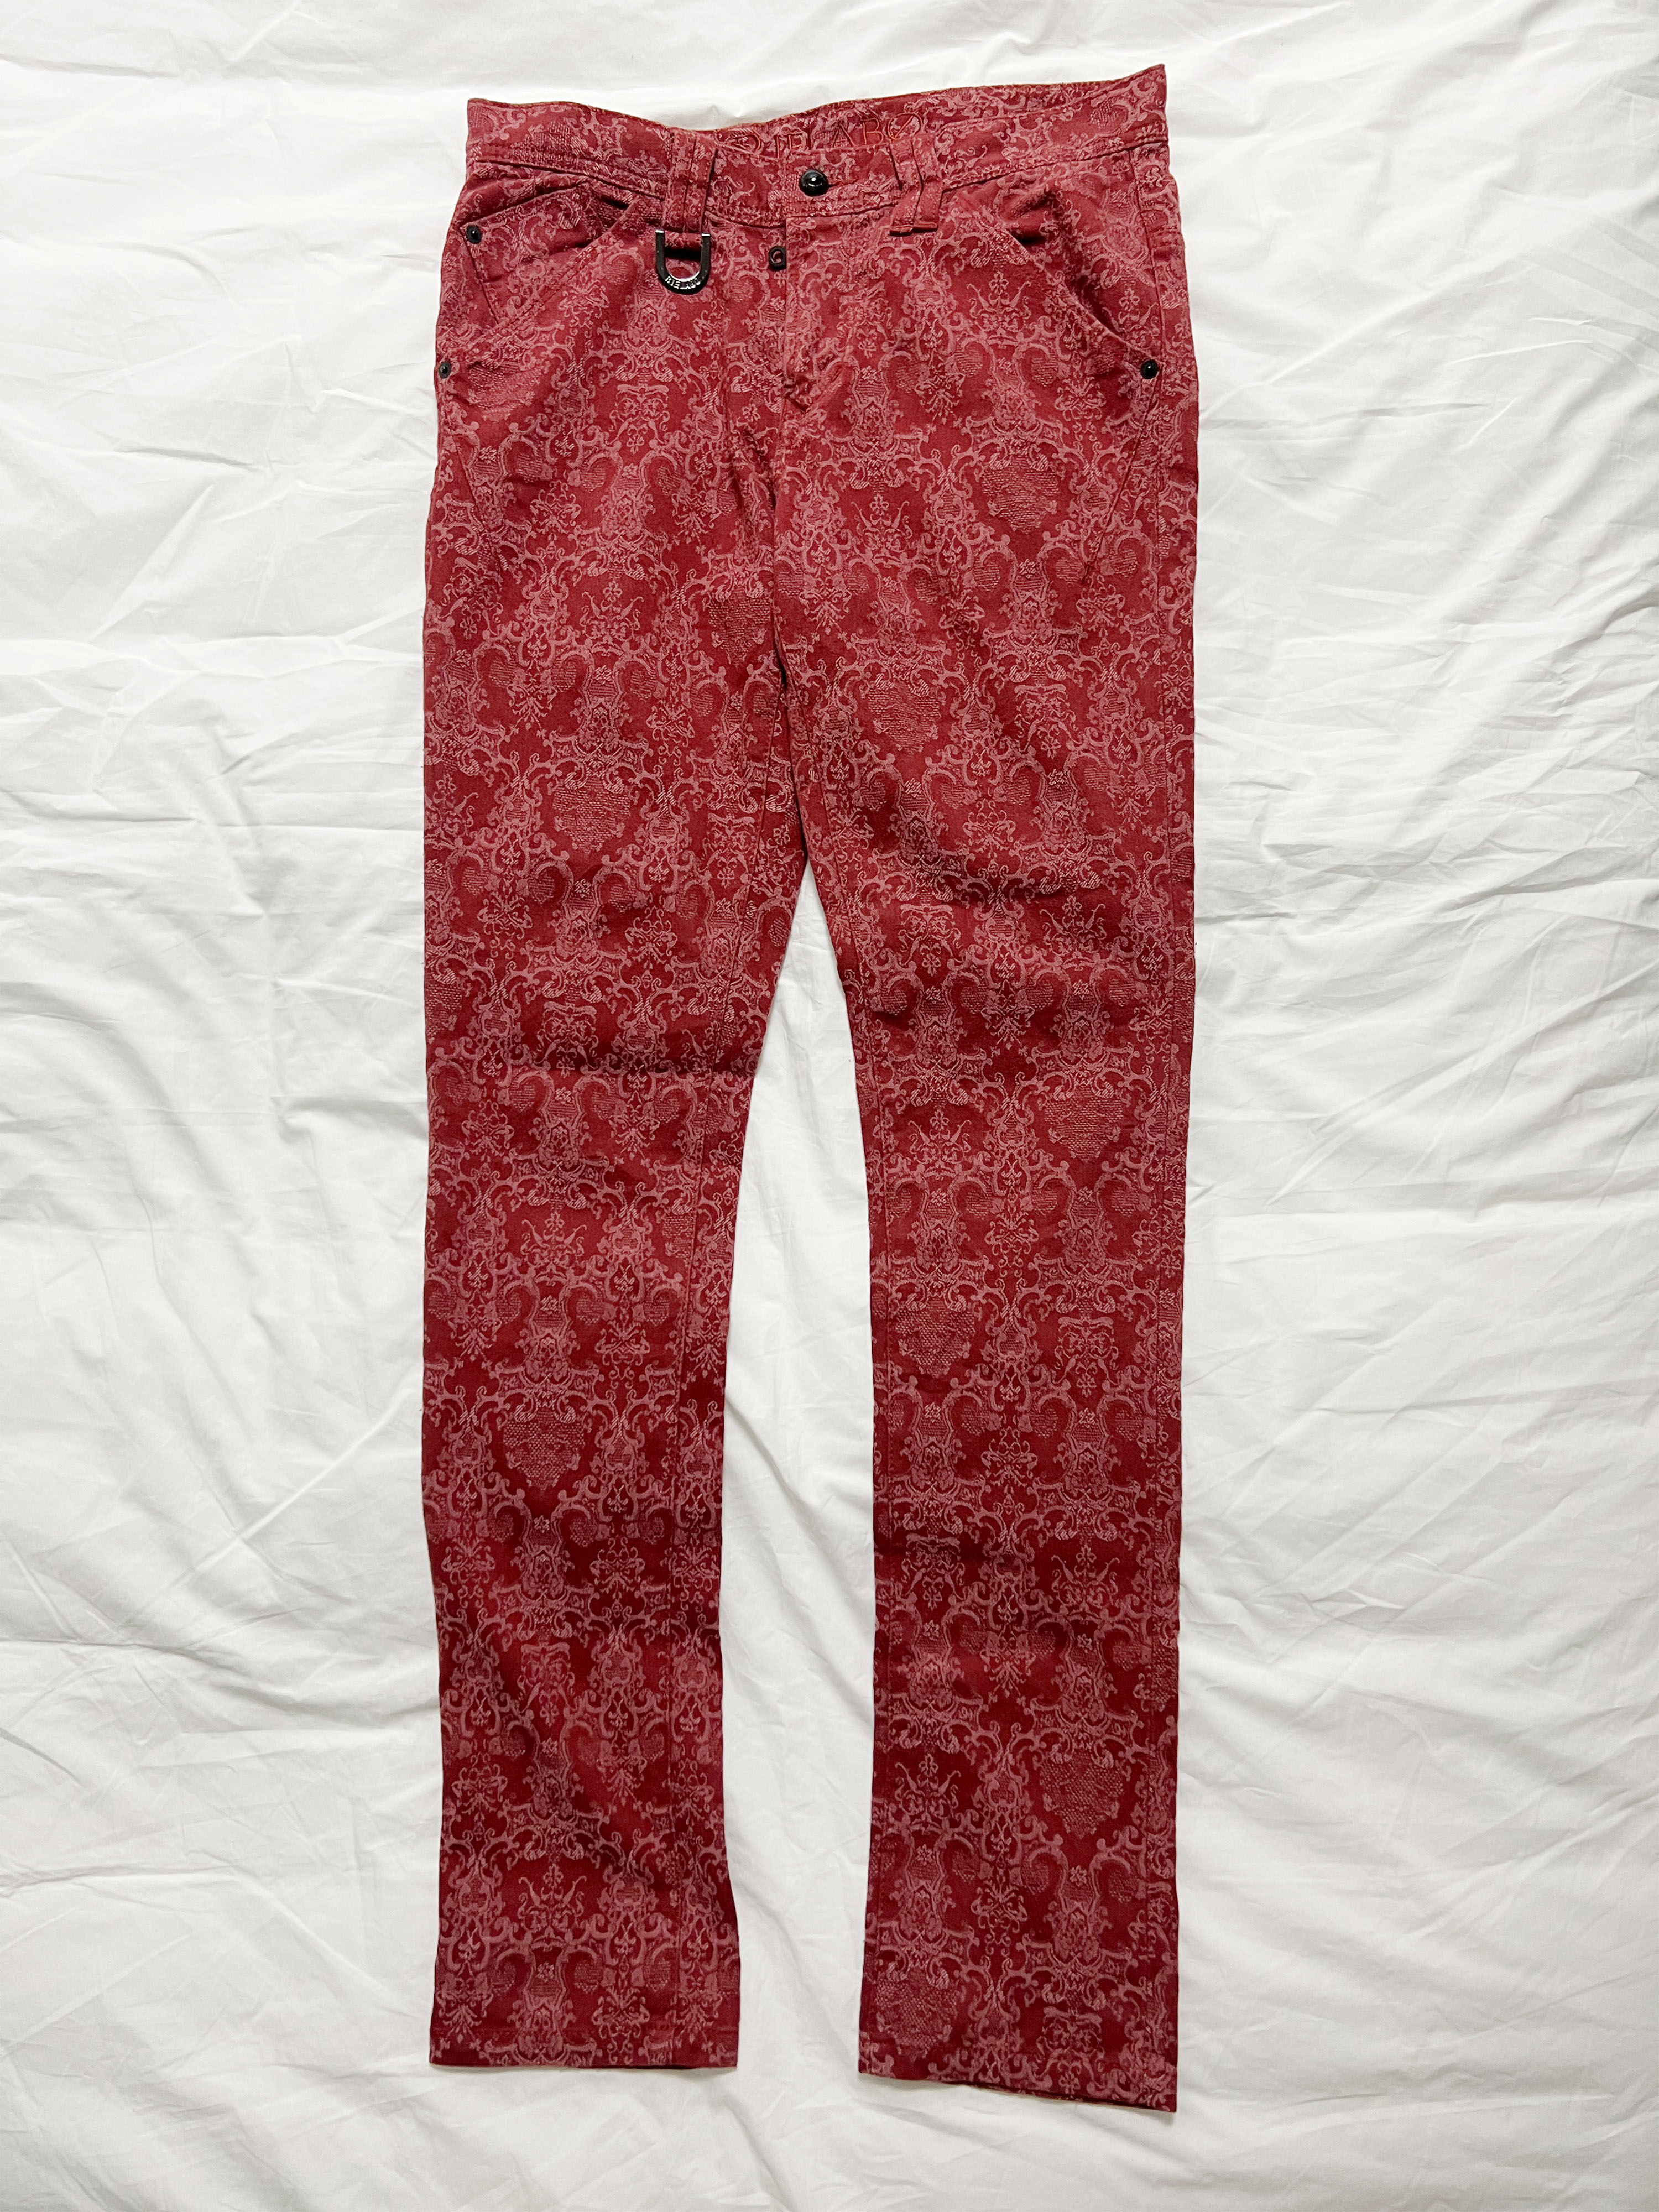 vintage pattern jean